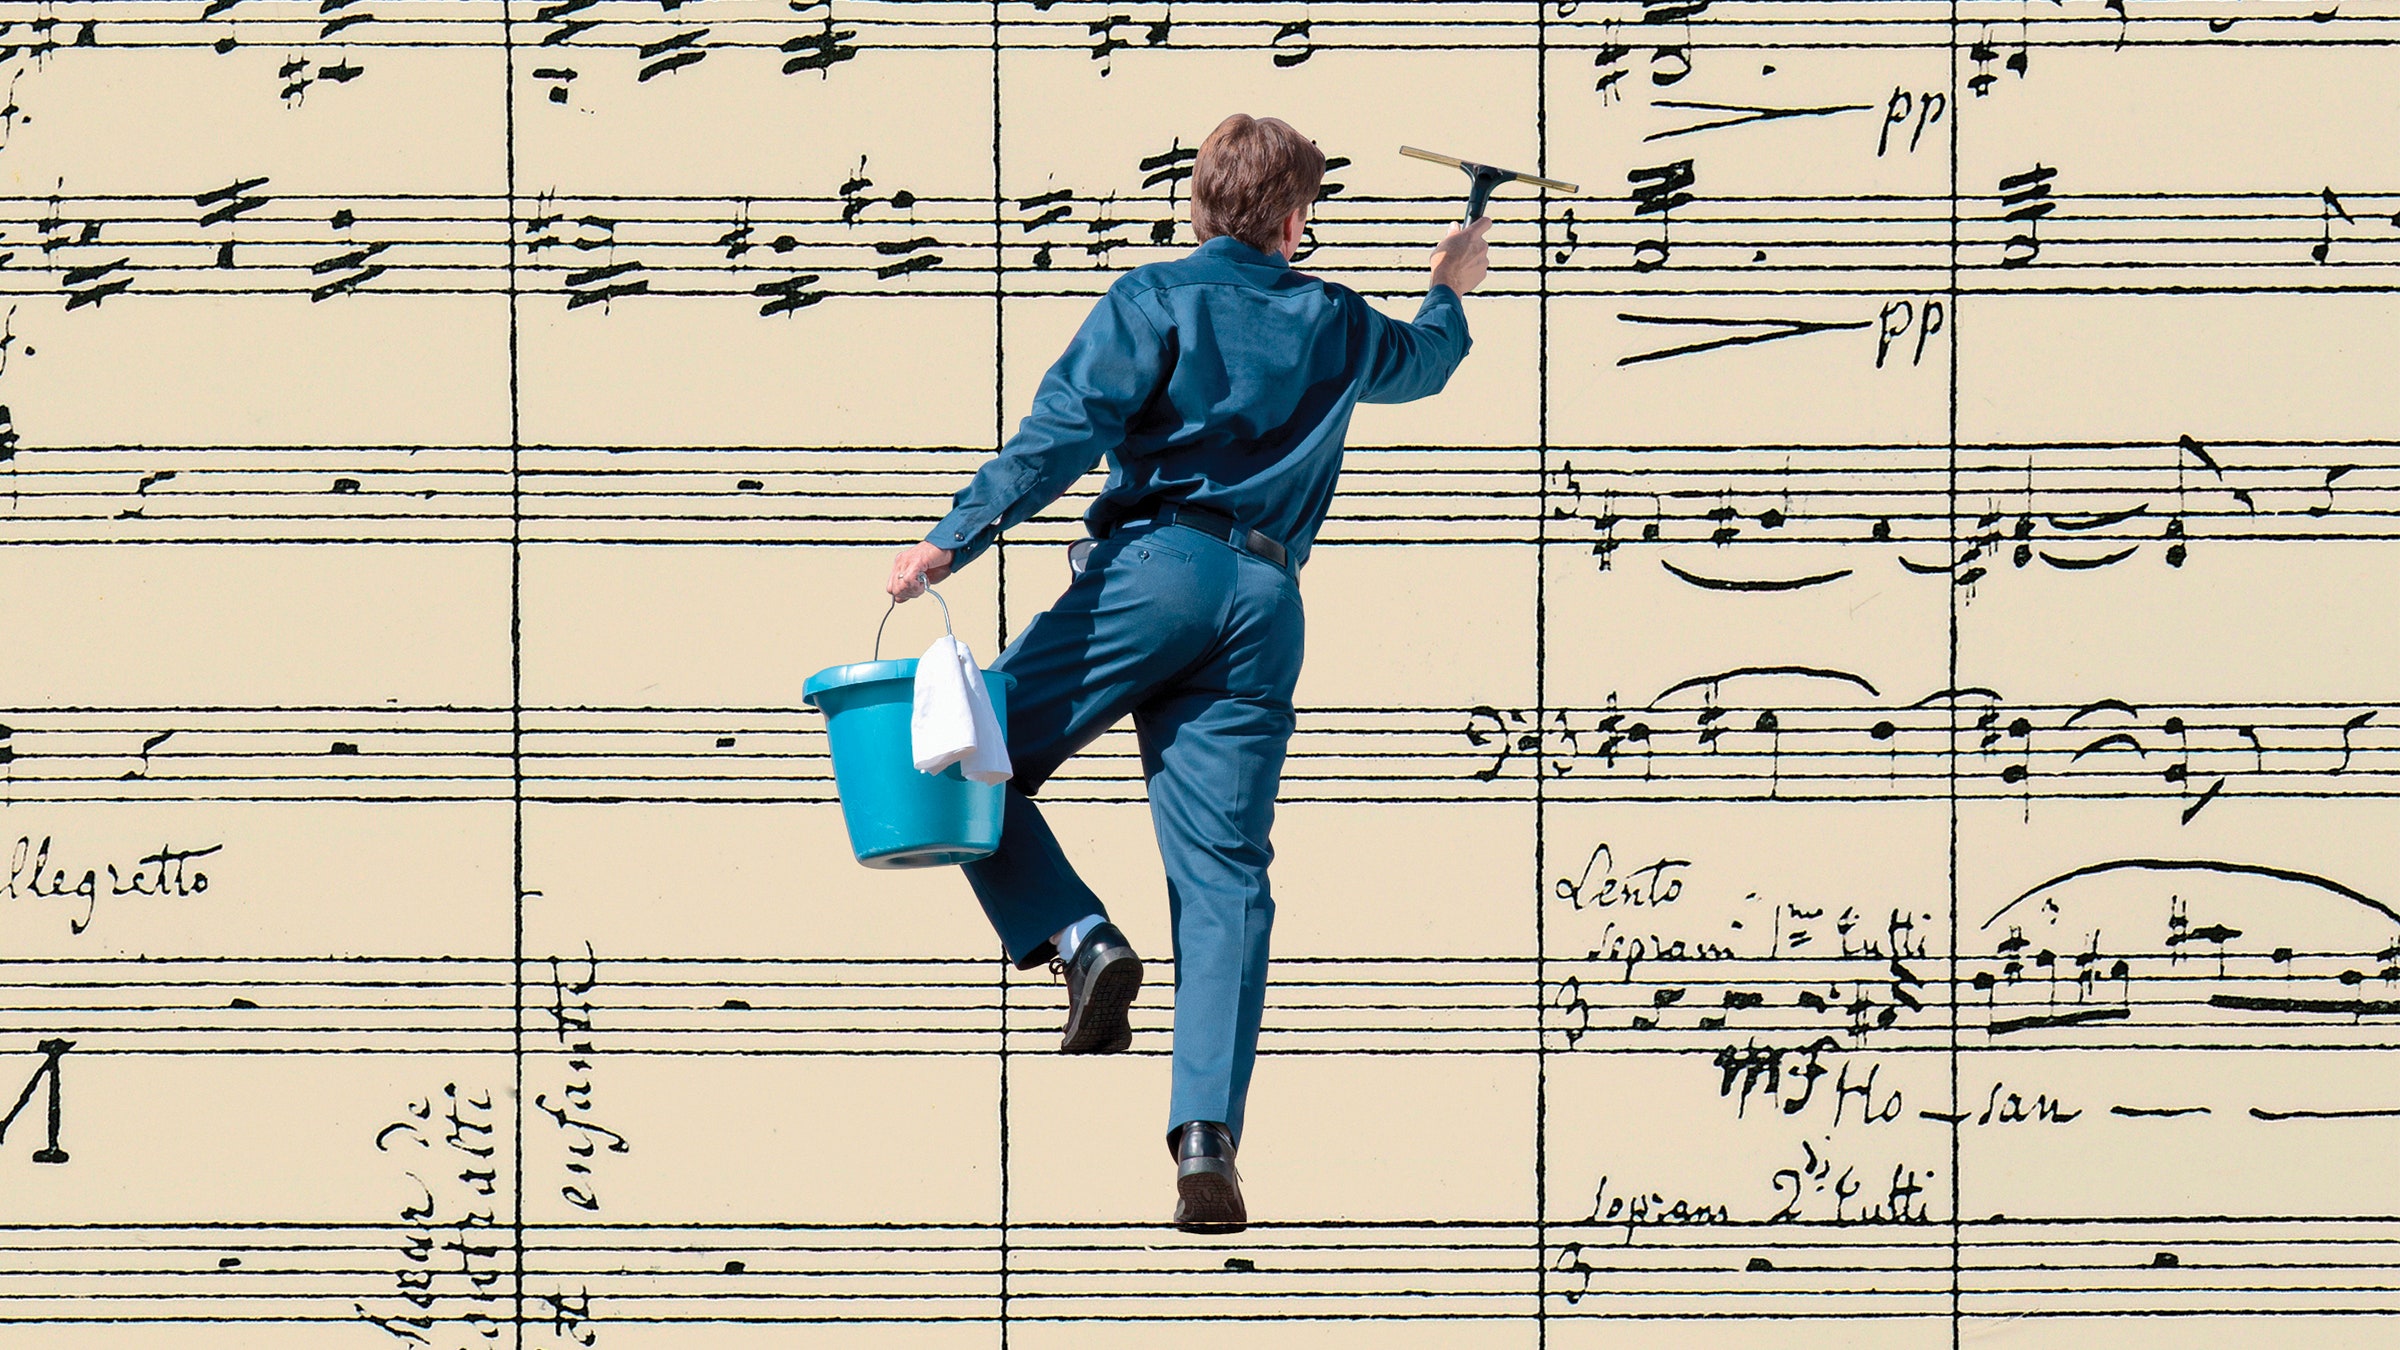 Ilustração de um homem limpando janelas com notas musicais ao fundo